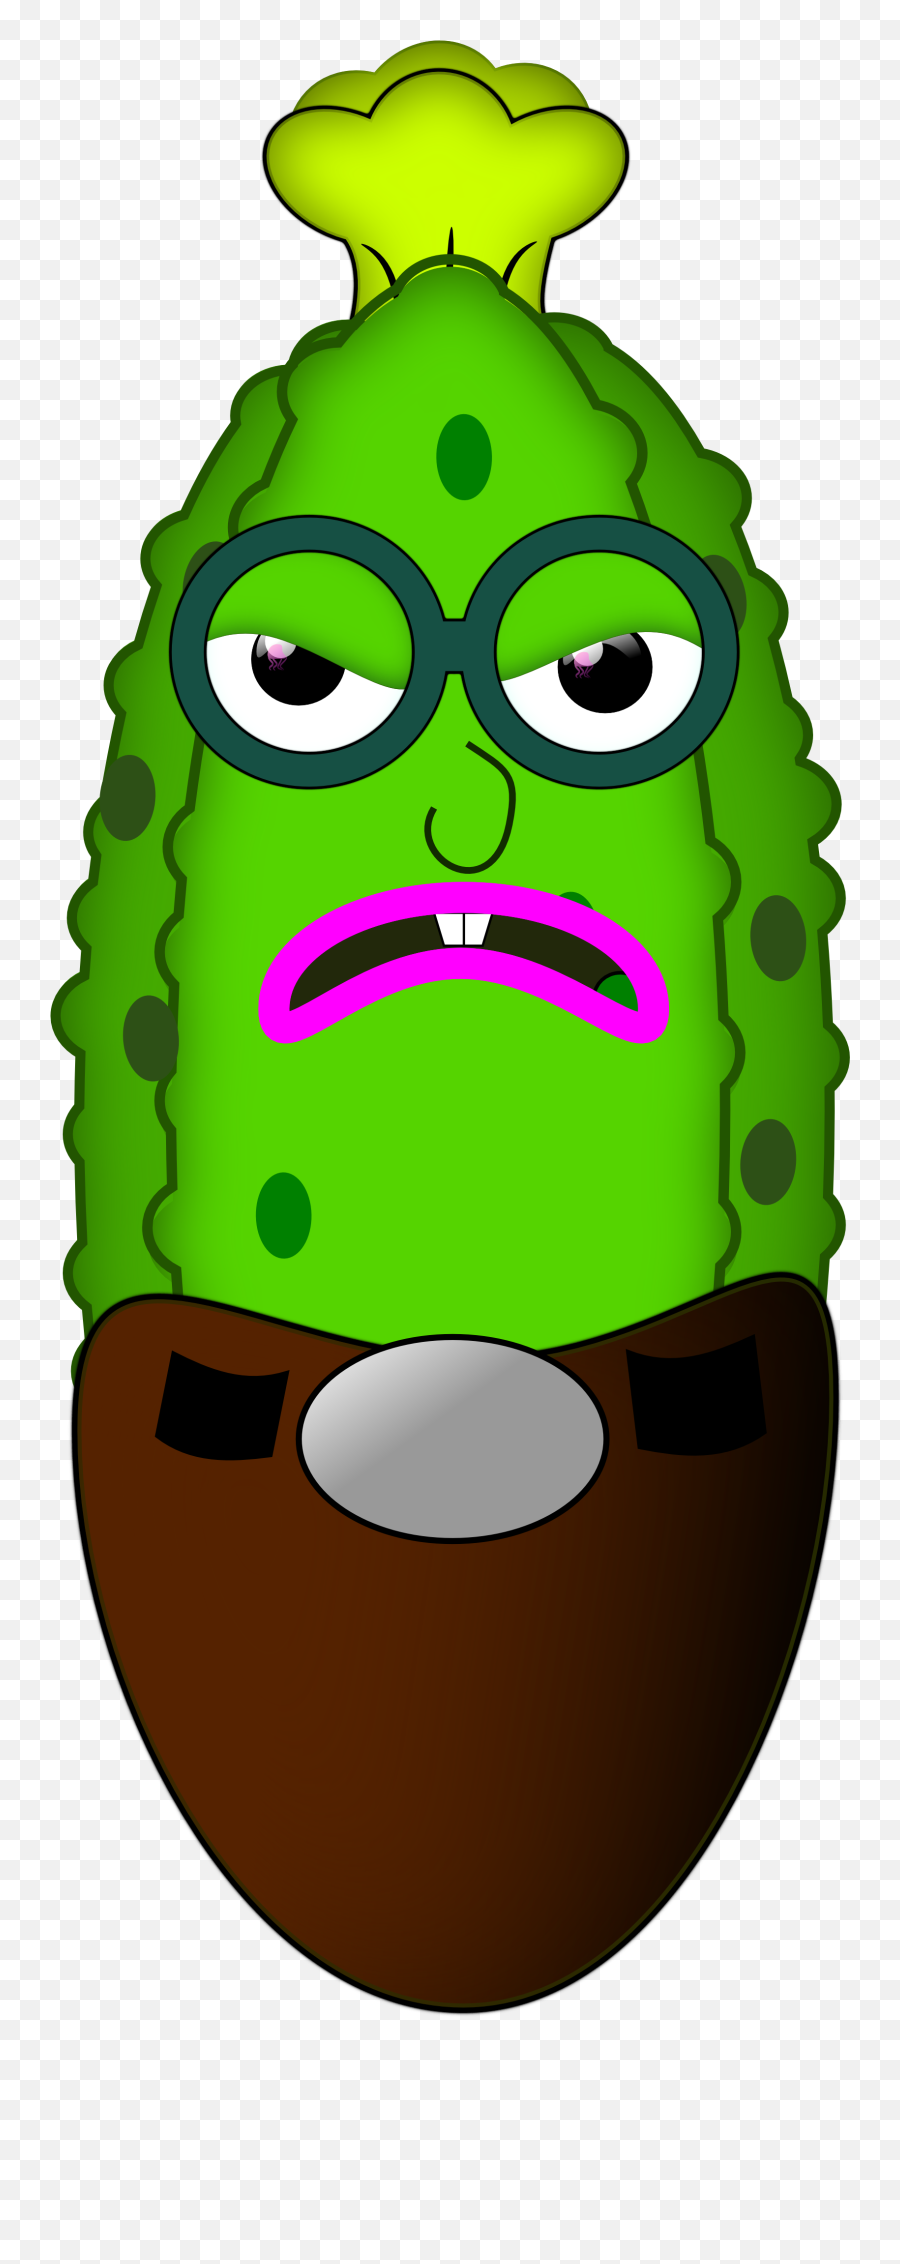 Pickle Clipart Cool As Cucumber - Pepino De Mar Dibujo Emoji,Pickle Emoji